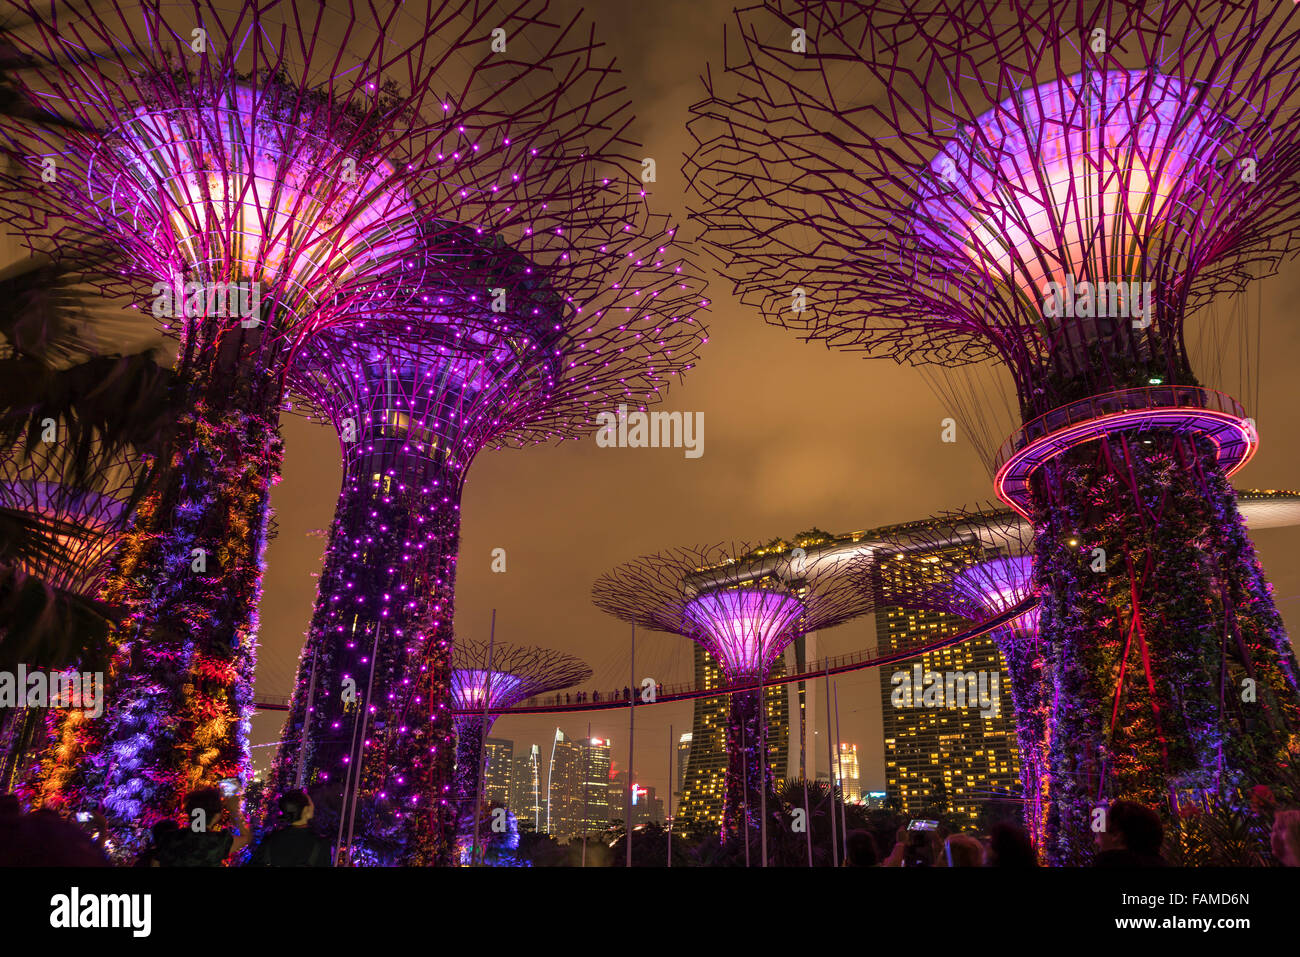 Super lit arbres, jardins, près de la baie, à Singapour, en Asie Banque D'Images